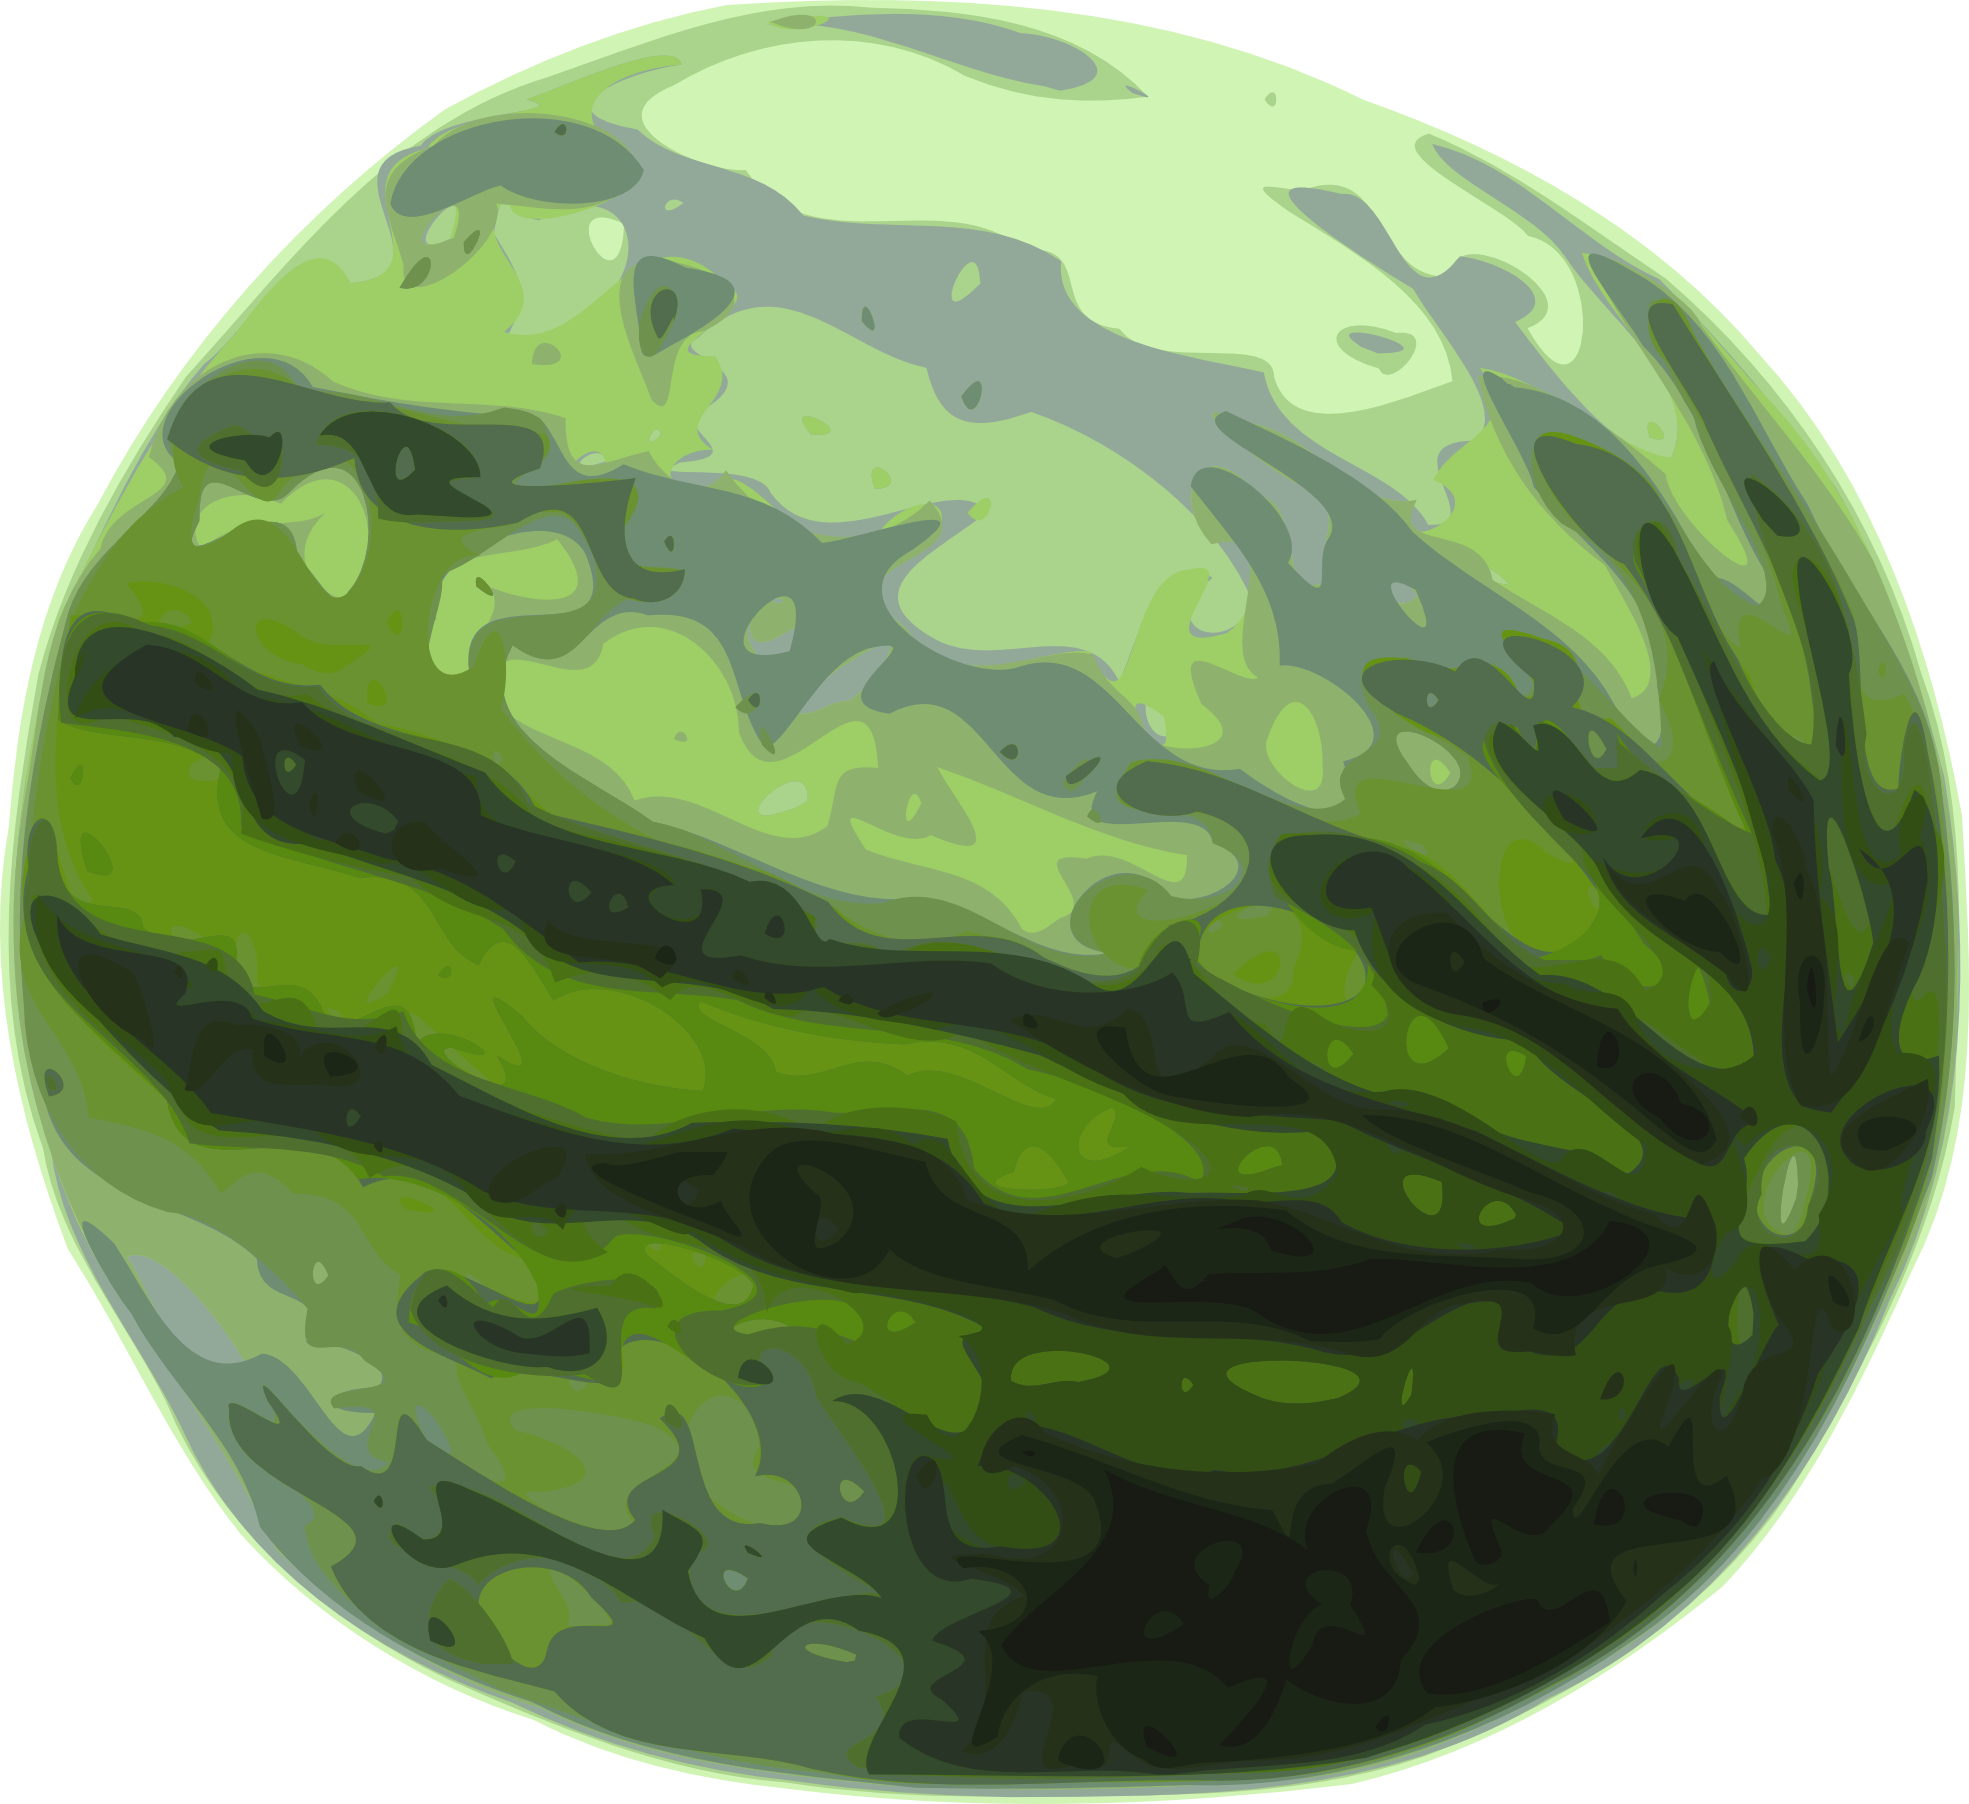 Watermelon clip art black and 3